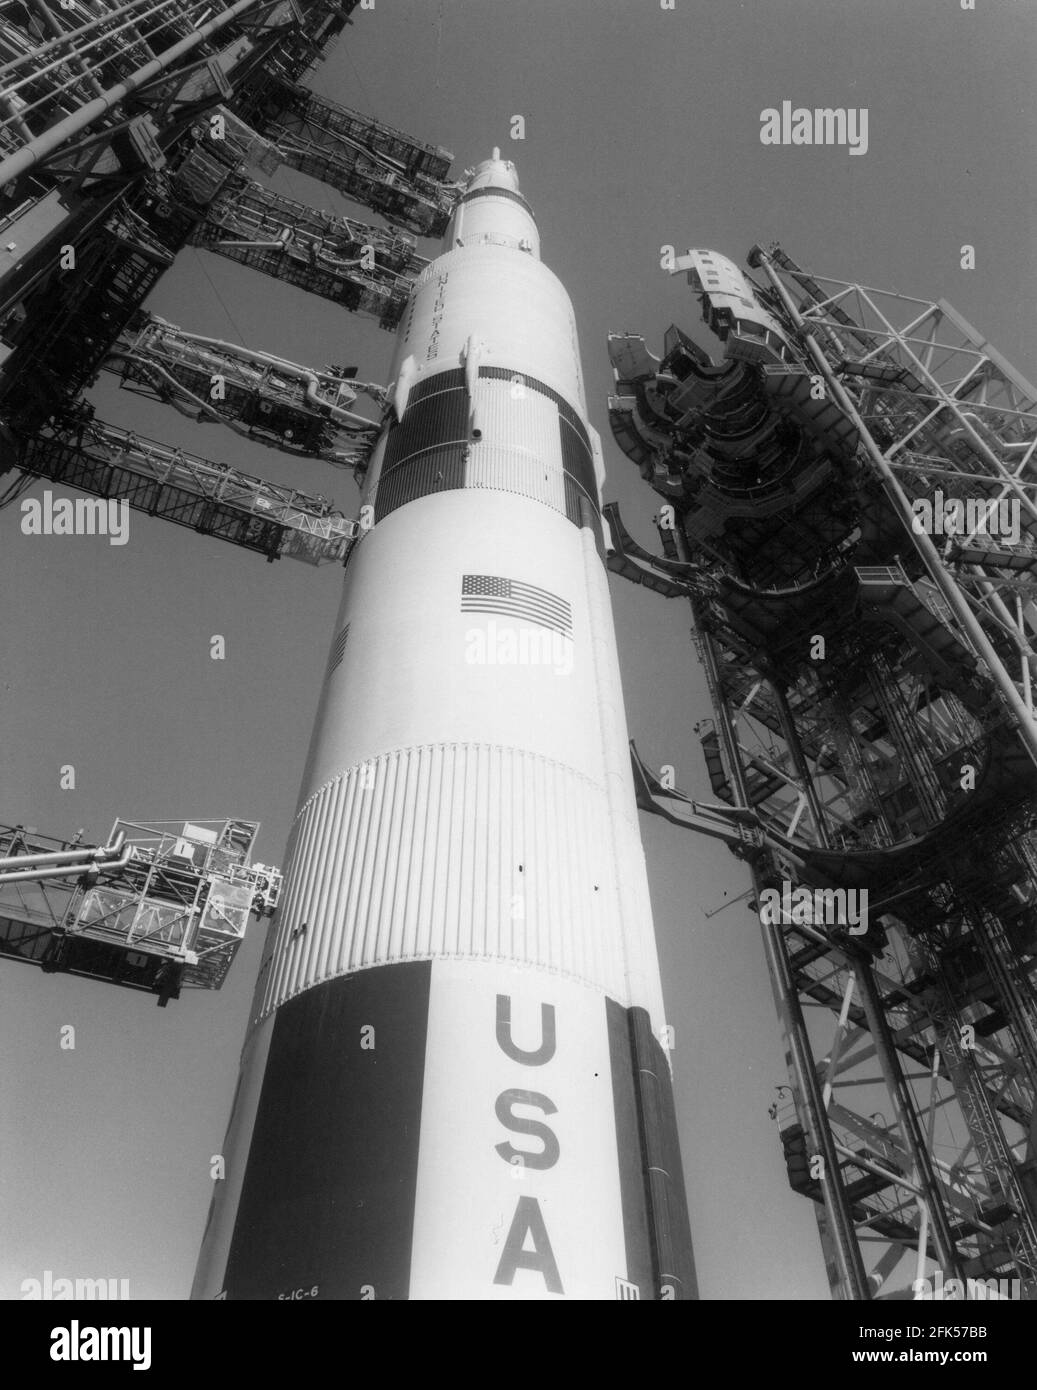 File photo - Cape Canaveral, FL - -- la struttura di Mobile Service si allontana dall'Apollo 11 Saturn V sul pad 39A mercoledì 2 luglio 1969. . --- l'astronauta americano Michael Collins, che ha volato il modulo di comando Apollo 11 mentre i suoi crewmates sono diventati la prima gente a terra sulla Luna il 20 luglio 1969, è morto il mercoledì dopo aver combattuto il cancro, la sua famiglia ha detto. Foto di NASA via CNP. /ABACAPRESS.COM Foto Stock